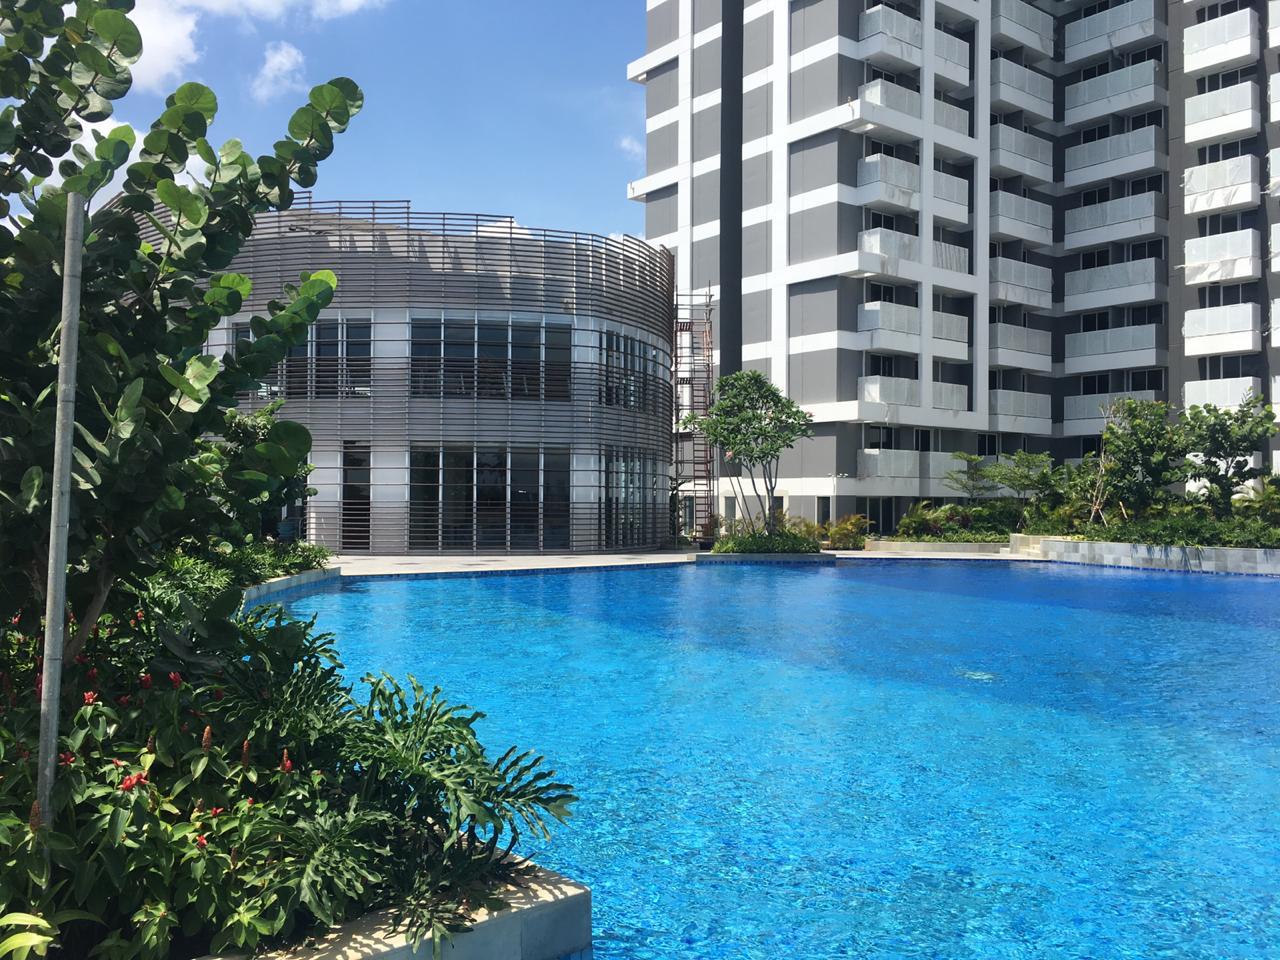 The Crest West Vista Apartemen Condominium Wvc001 Jakarta Apartments For Sale Or Rent Best Service Rich Selection